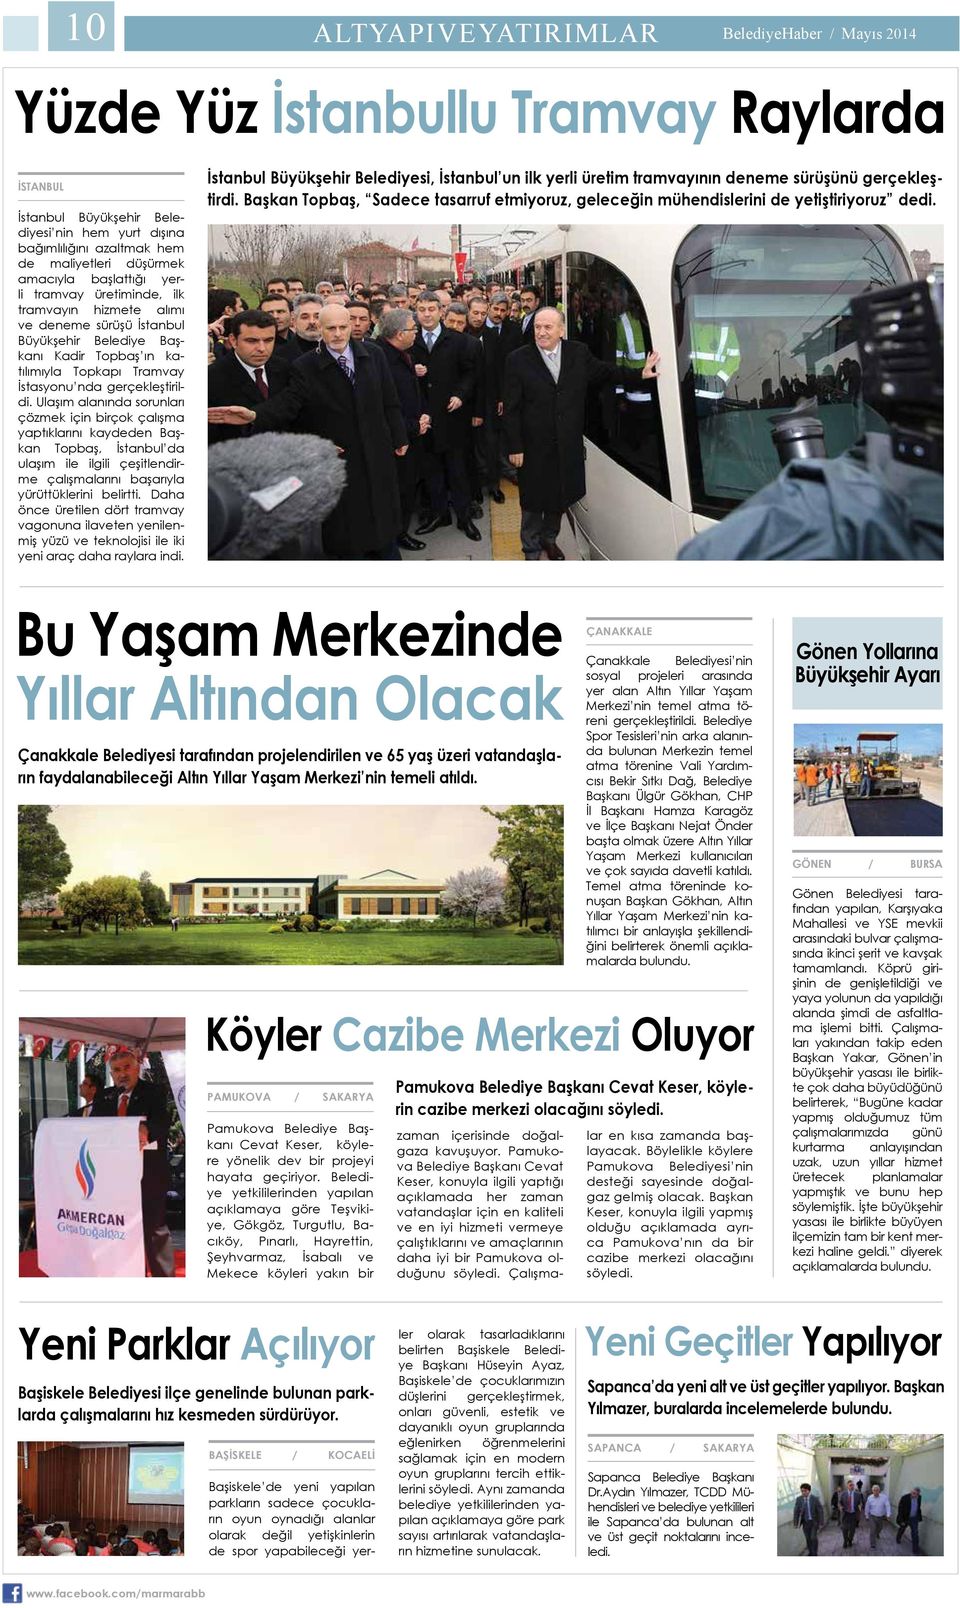 gerçekleştirildi. Ulaşım alanında sorunları çözmek için birçok çalışma yaptıklarını kaydeden Başkan Topbaş, İstanbul da ulaşım ile ilgili çeşitlendirme çalışmalarını başarıyla yürüttüklerini belirtti.